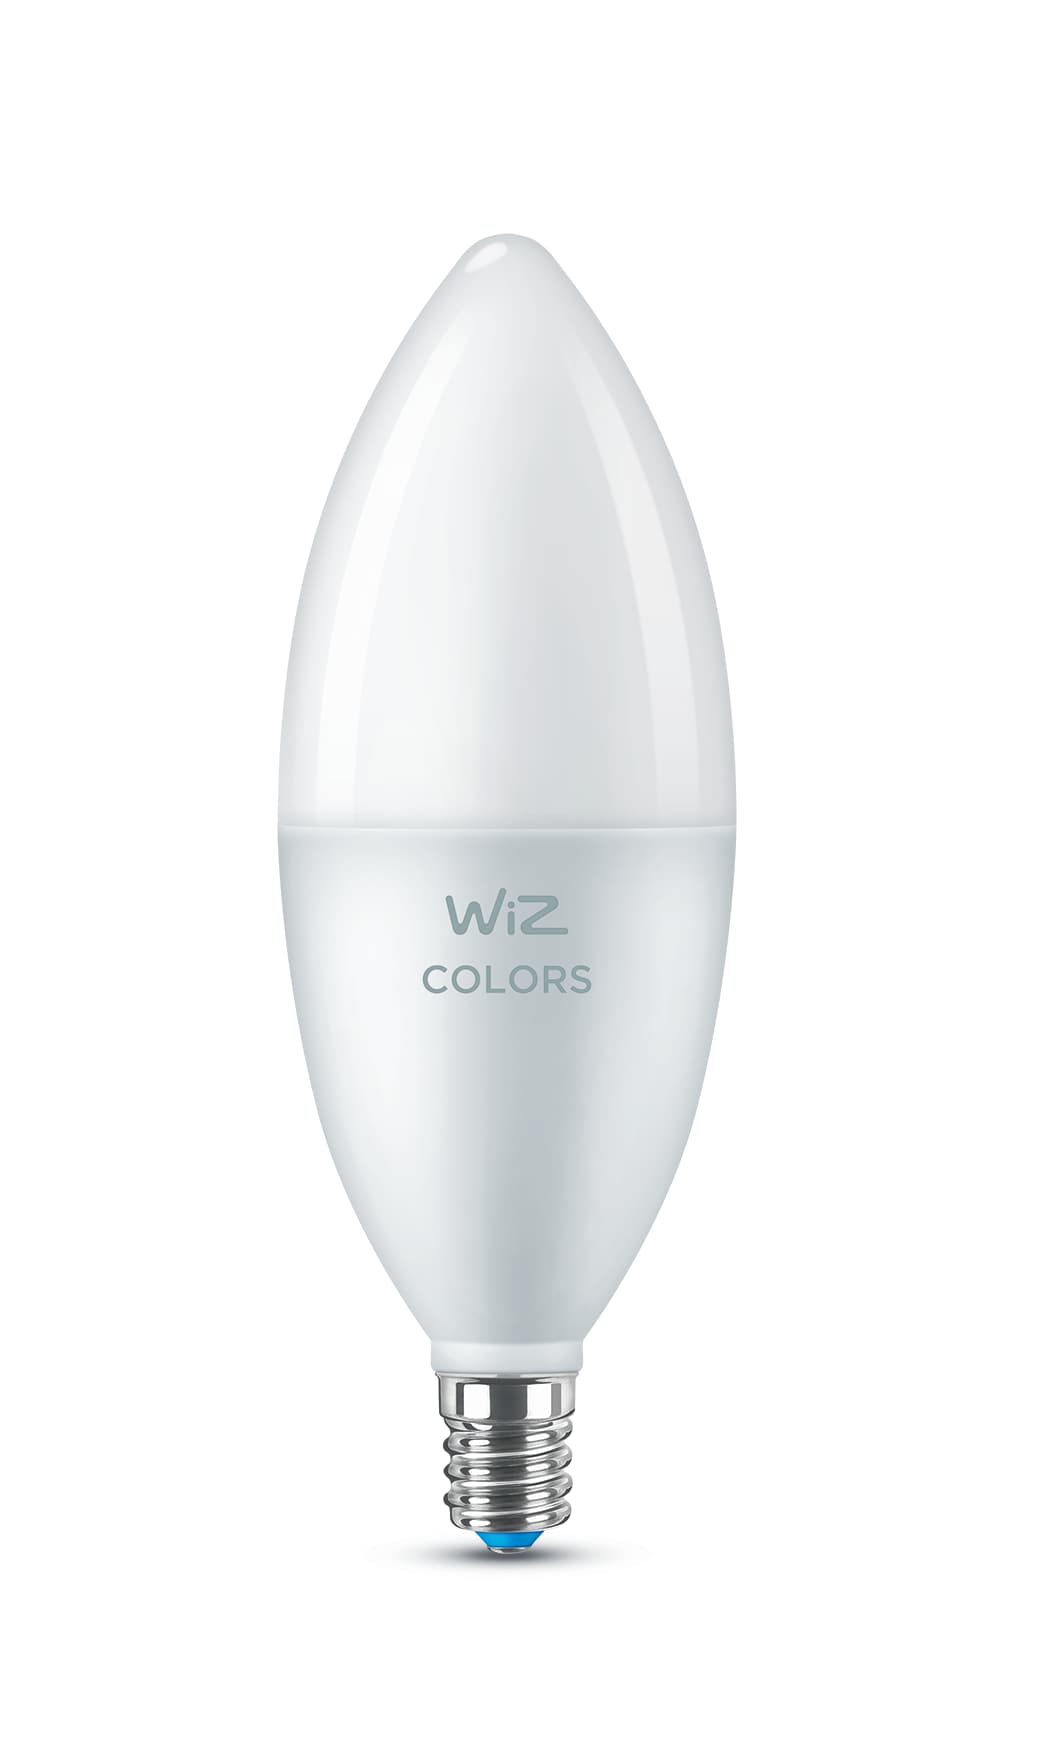 White LED Light Base White Acrylic Lamp Base Color Changing Light